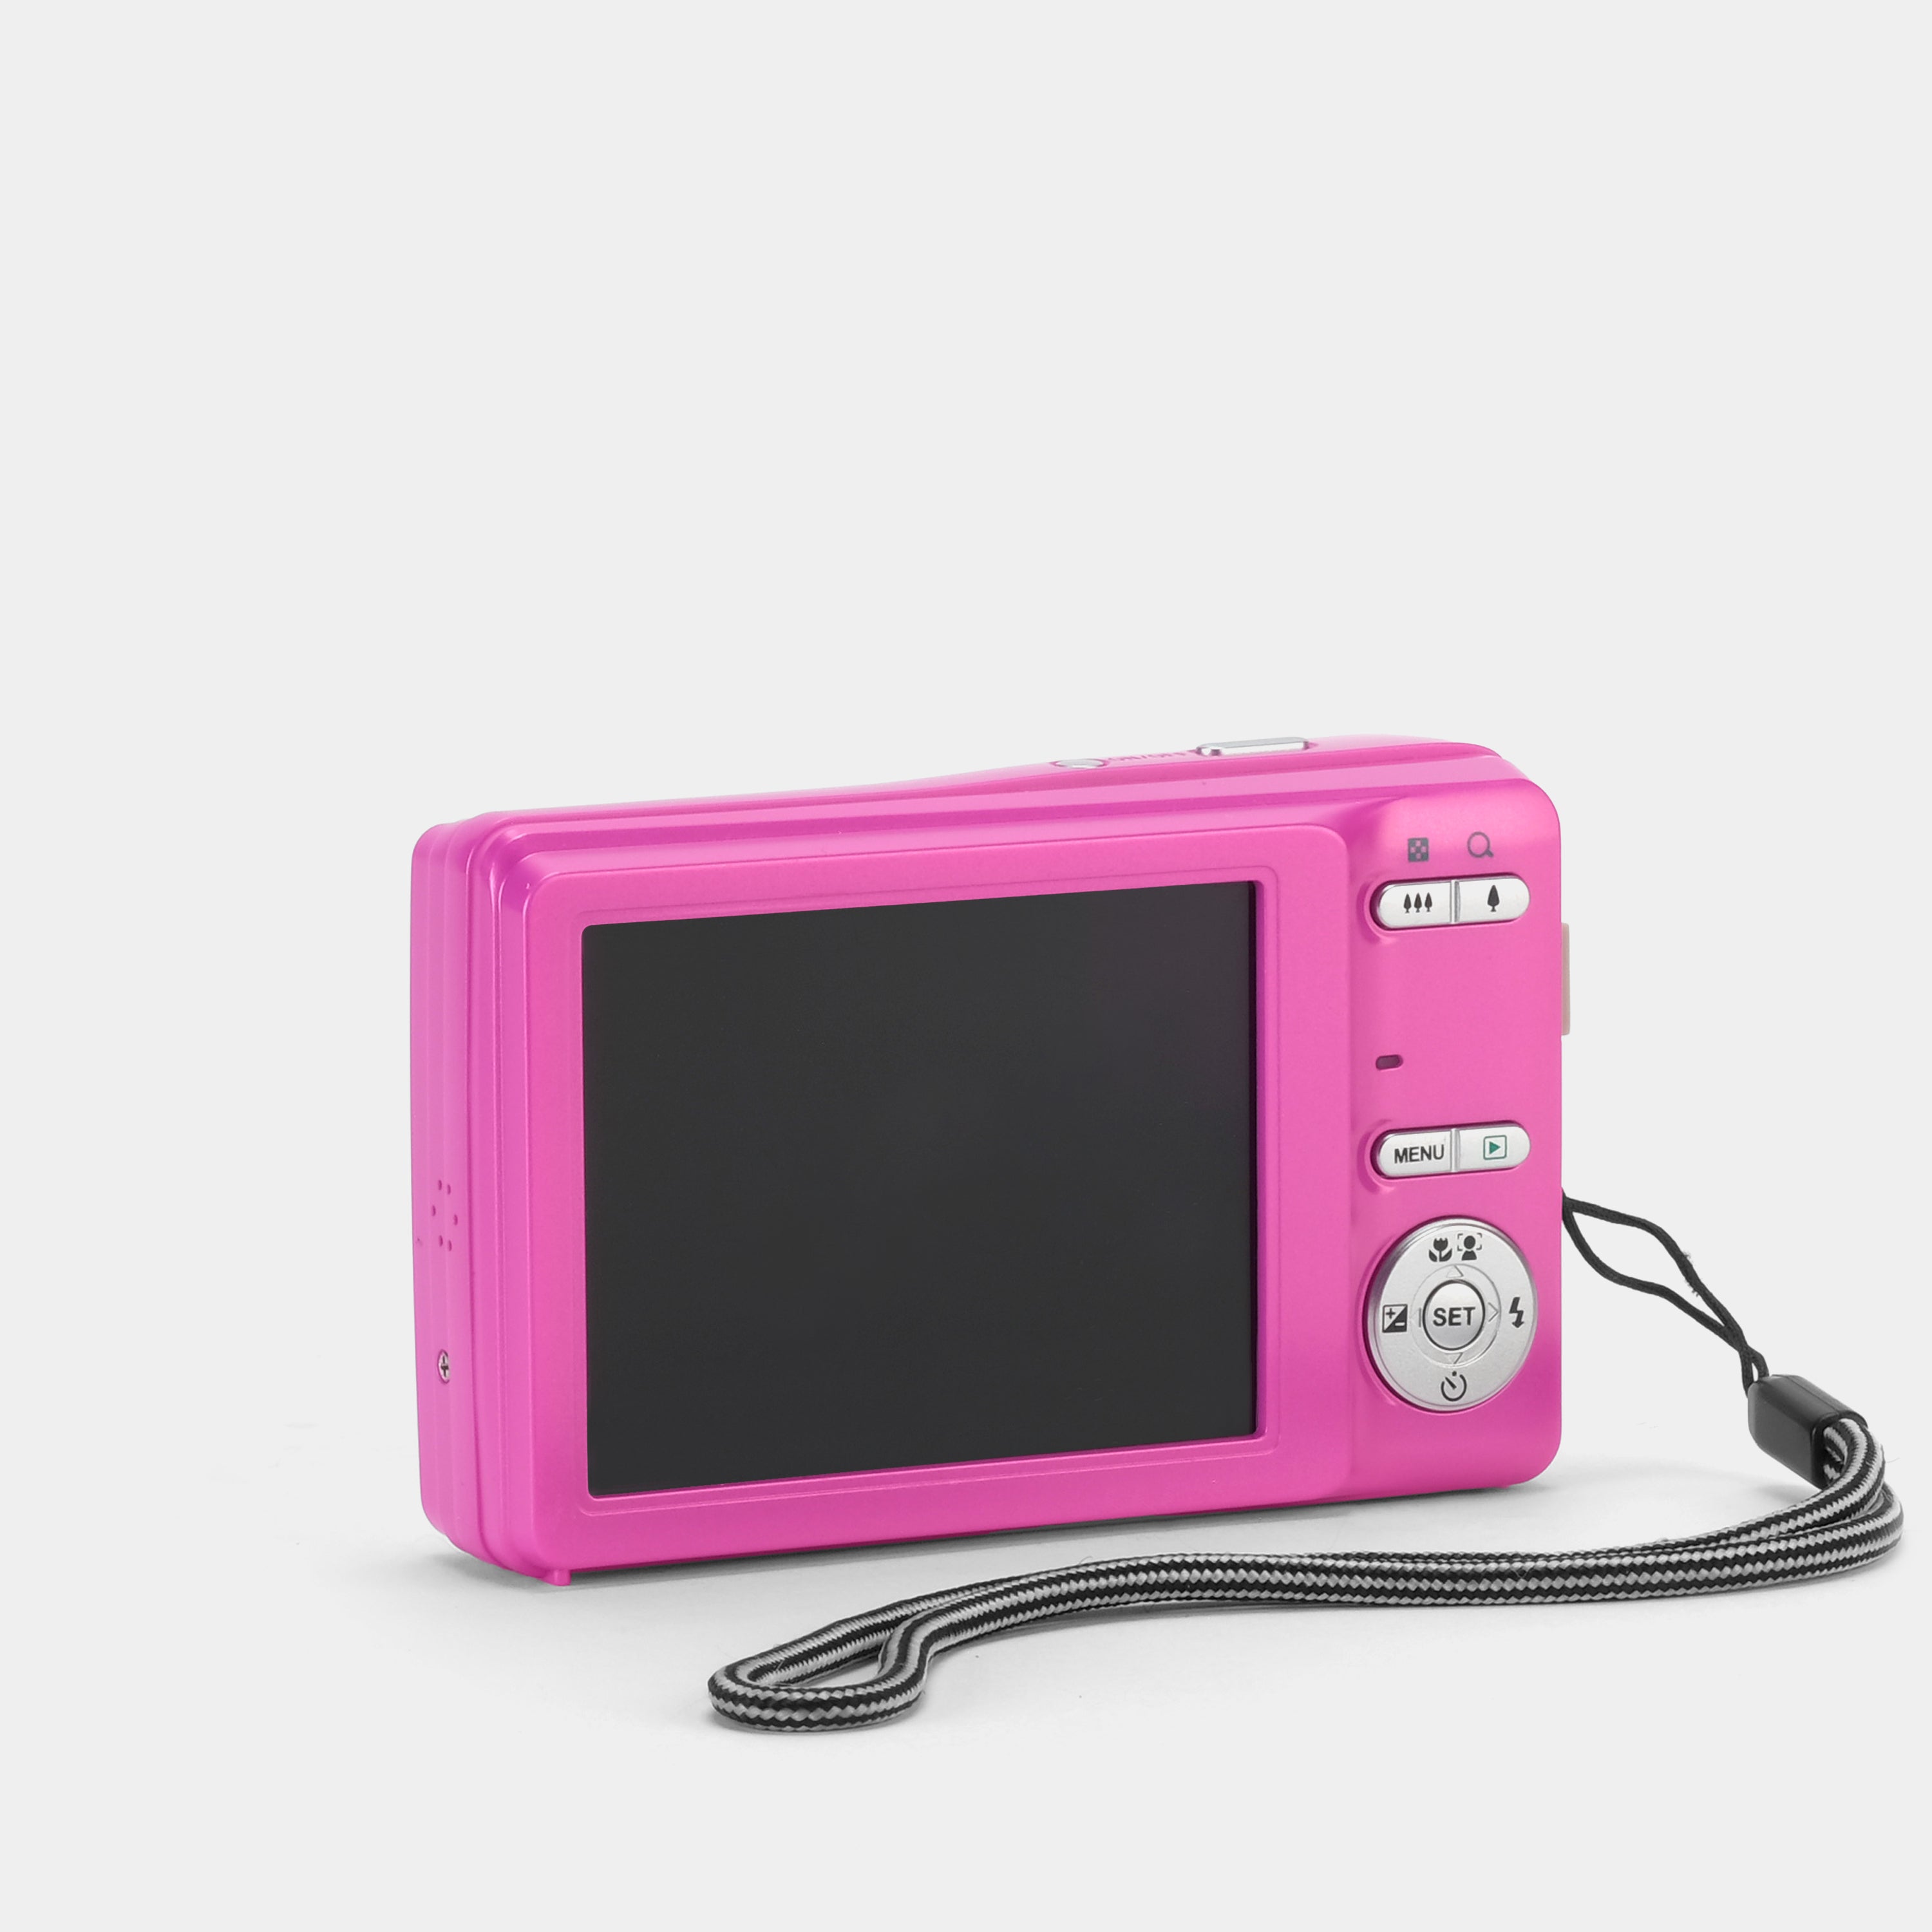 Sanyo VPC-S1415 Pink Digital Point and Shoot Camera